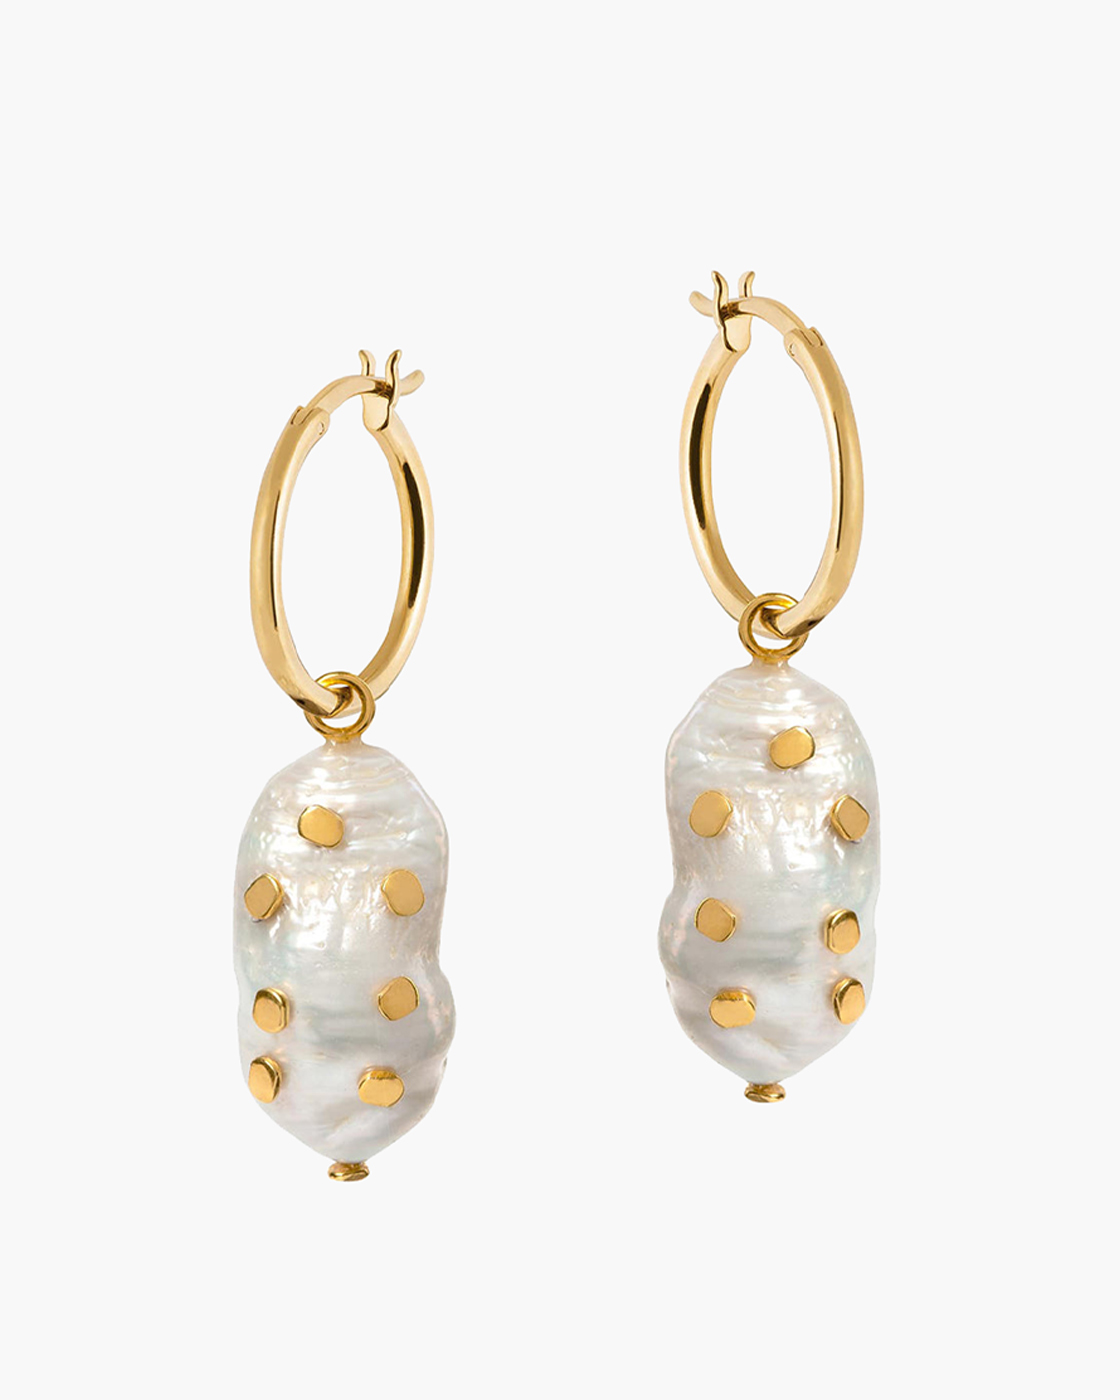 Venus Gold Hoop Earrings with Large Keshi Pearl